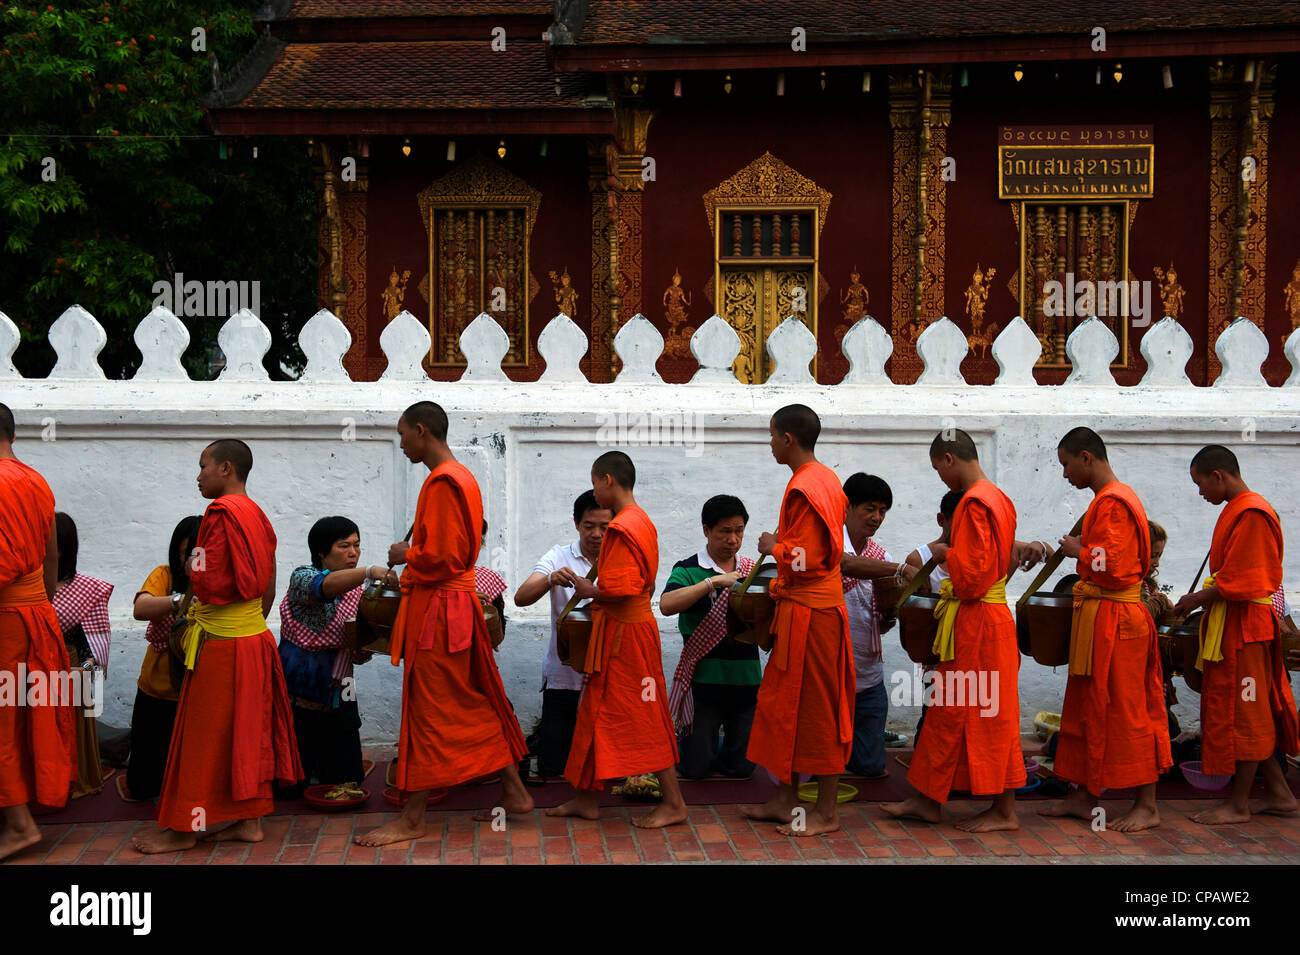 Monka collect alms every morning at dawn, Luang Prabang, Mekong River, Laos Stock Photo